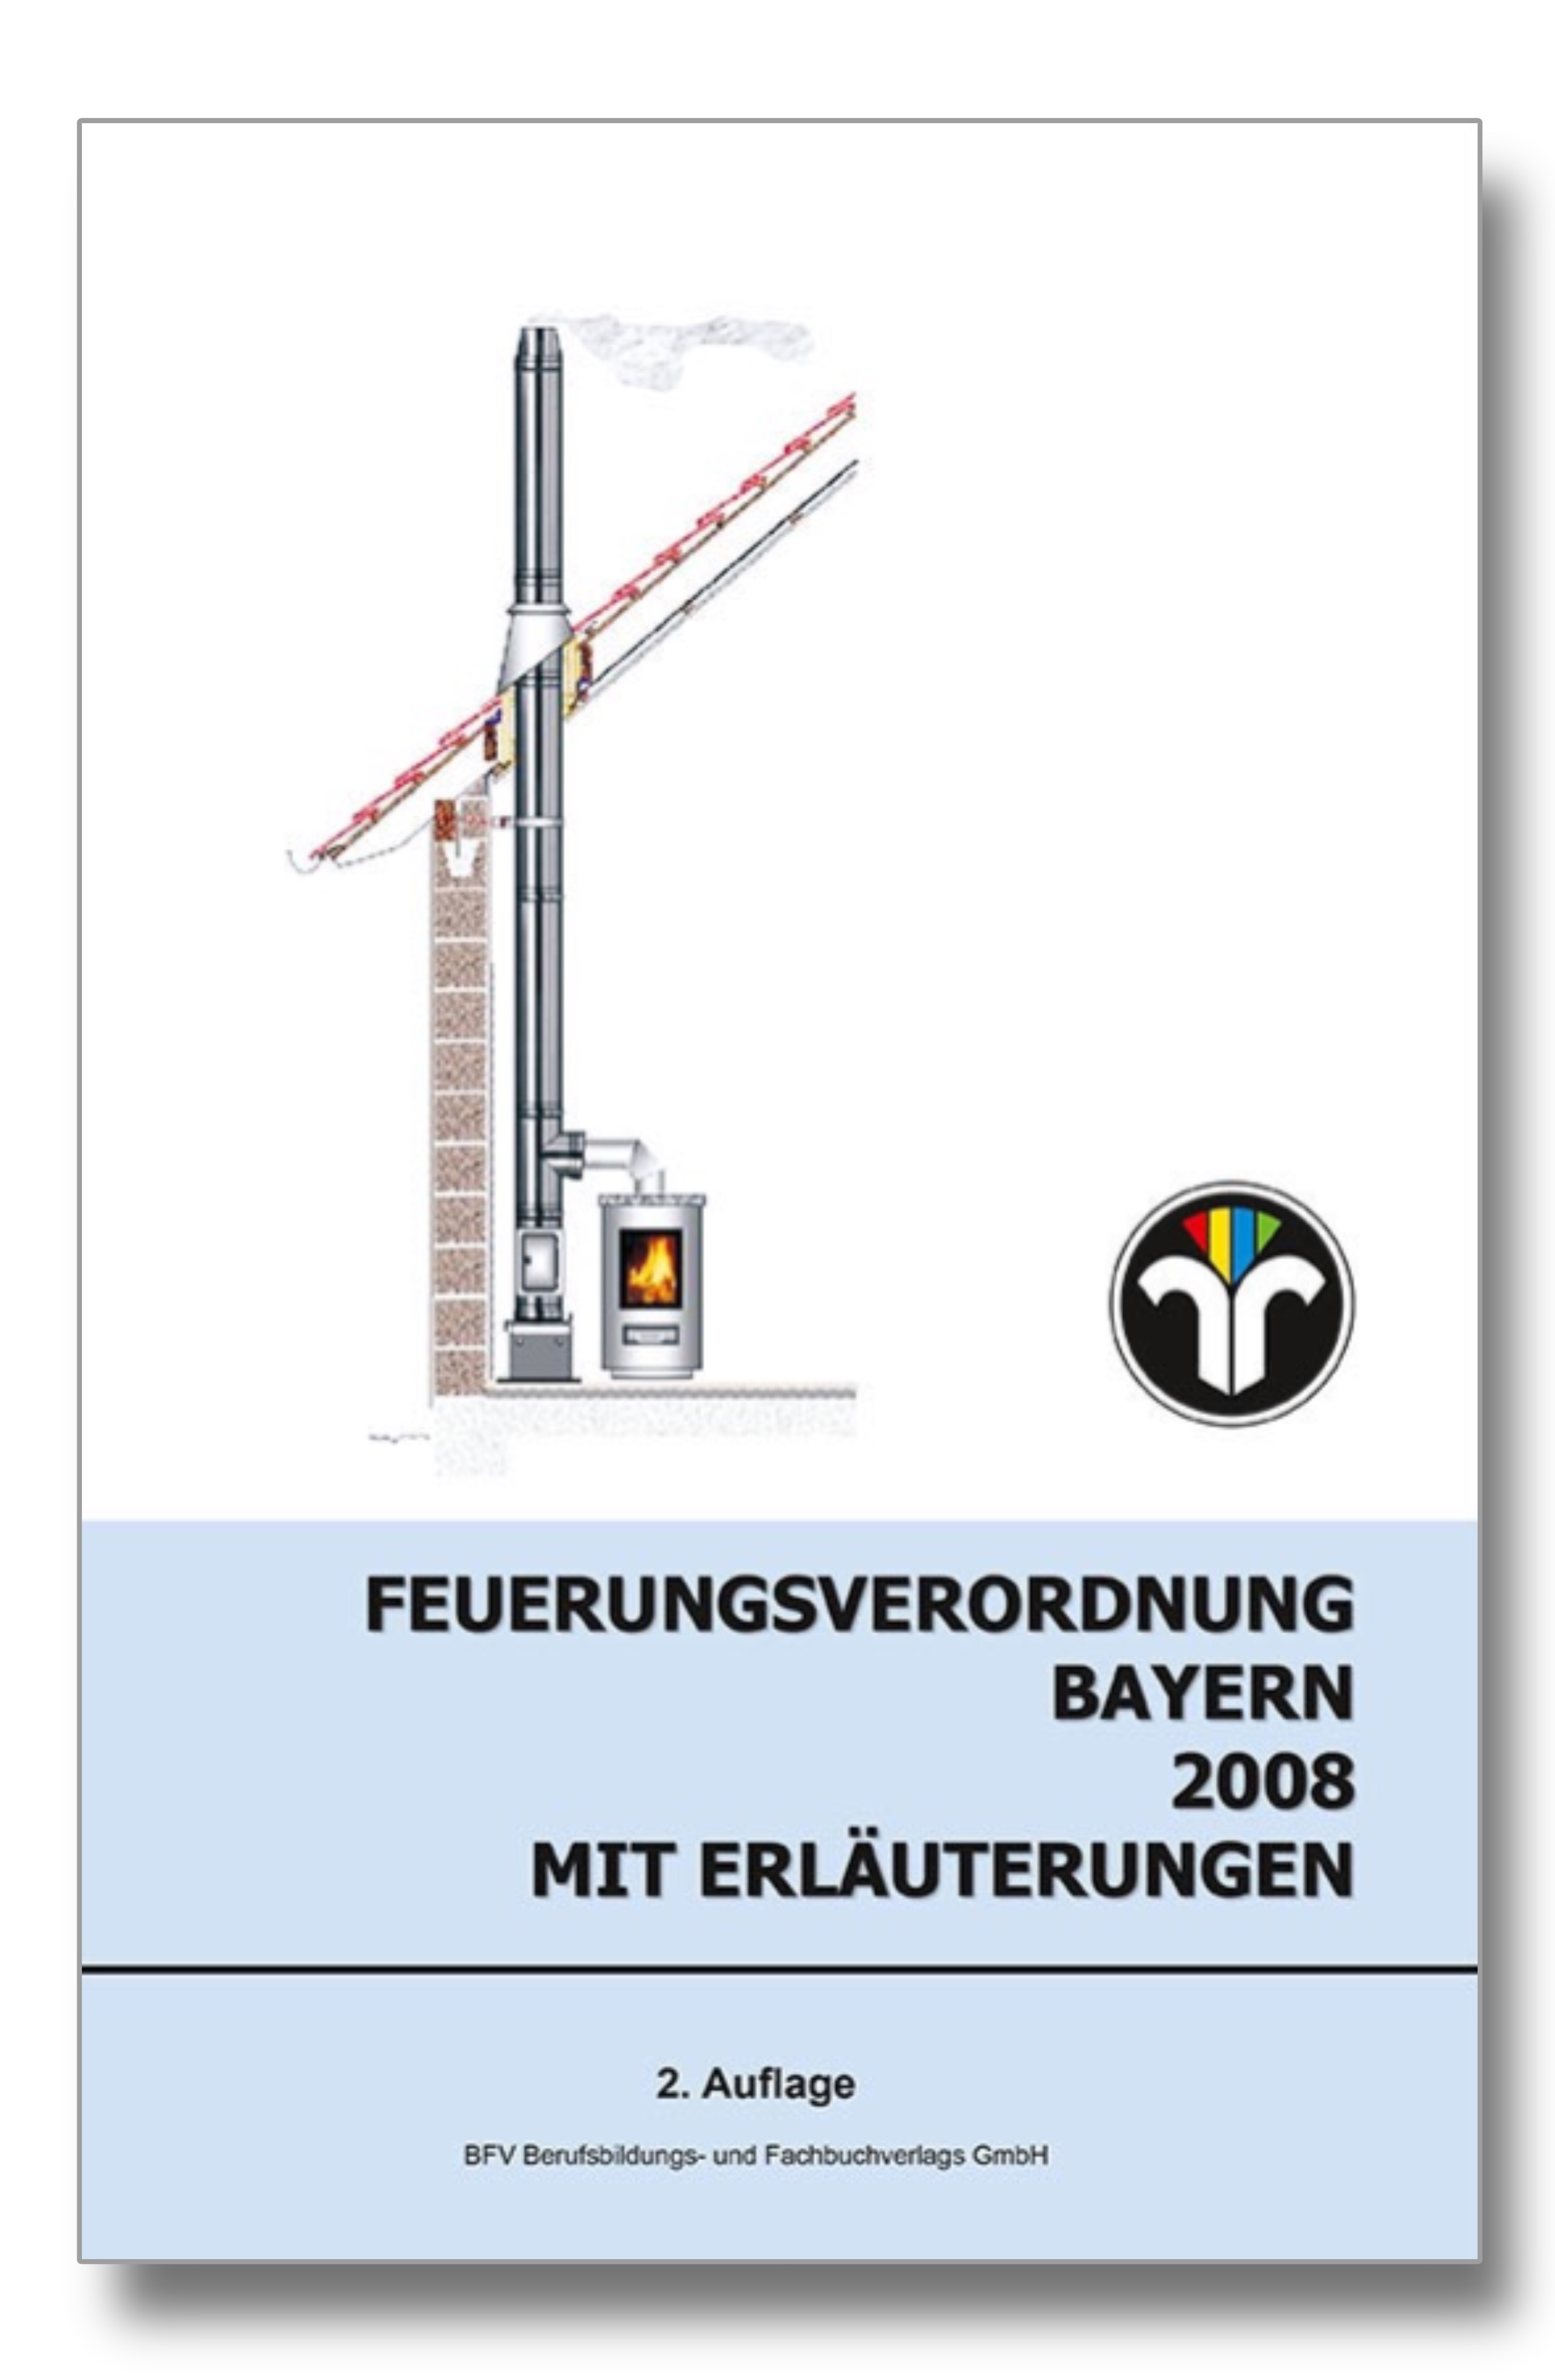 Feuerungsverordnung mit Erläuterungen - Bayern 2. Auflage 2008, DIN A4 in Farbe